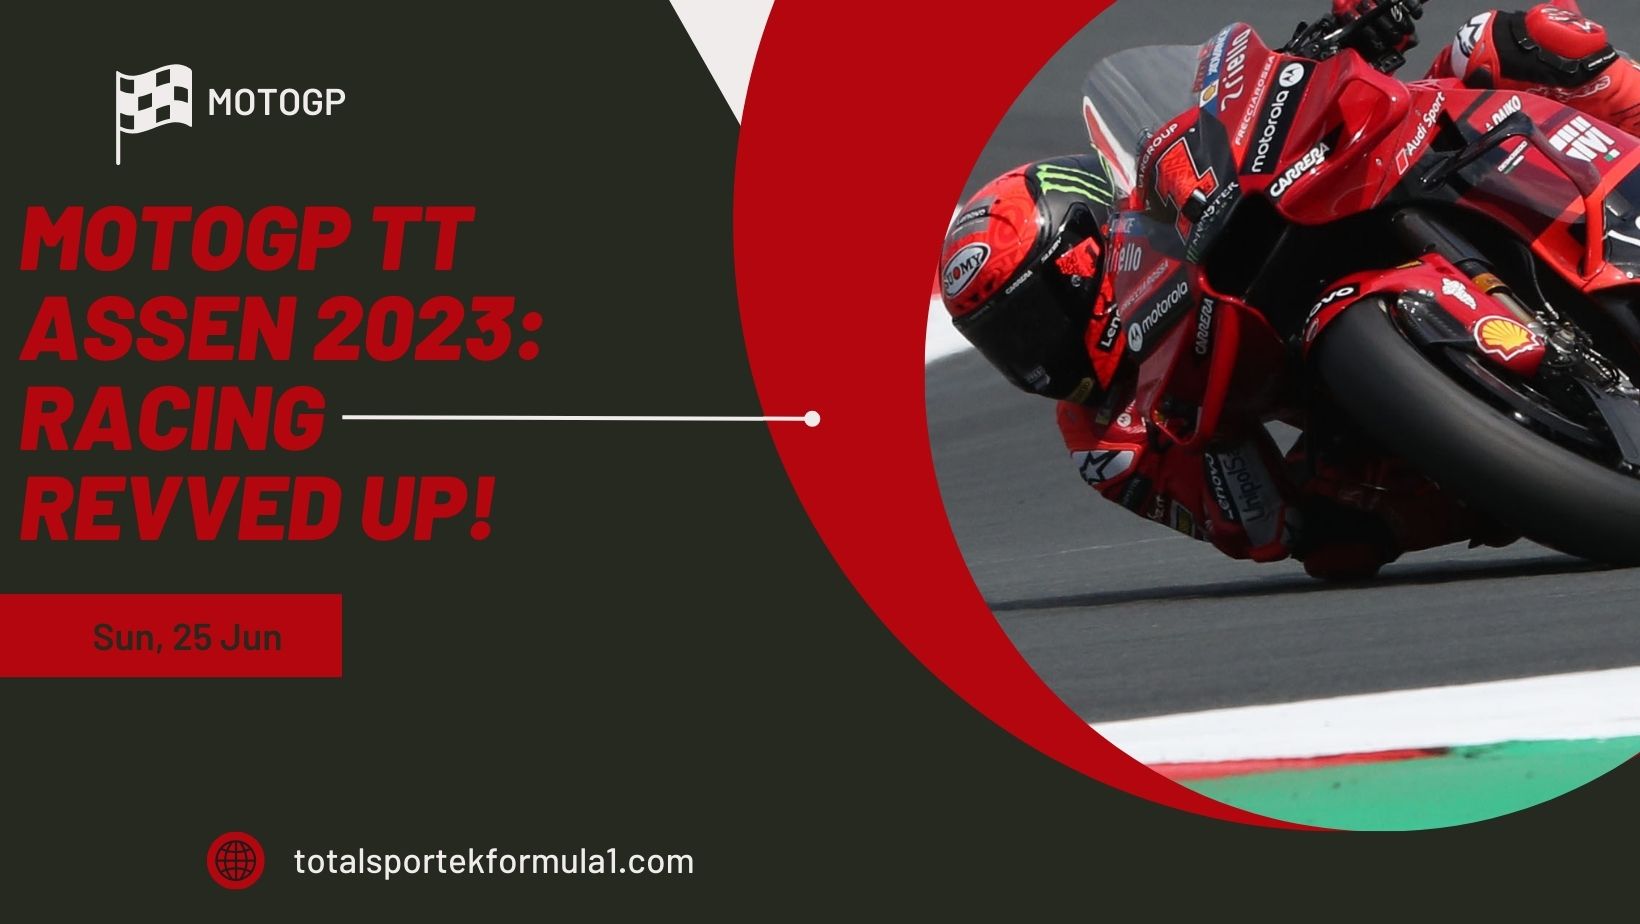 MotoGP TT ASSEN 2023